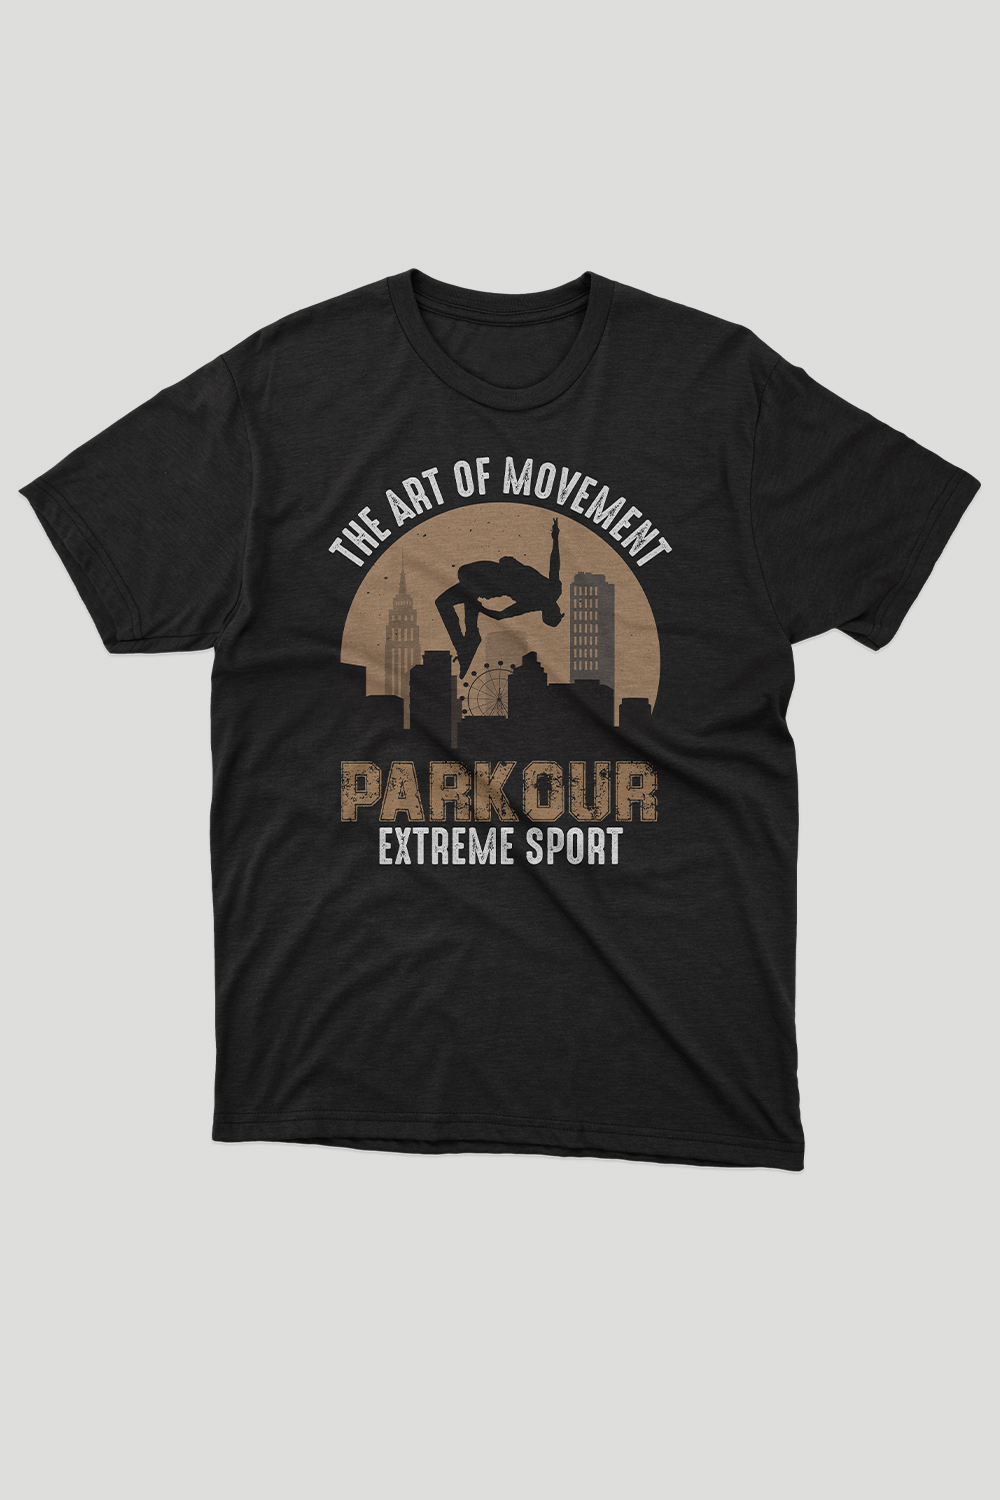 parkour T shirt Design5, parkour, parkour Design, pinterest preview image.